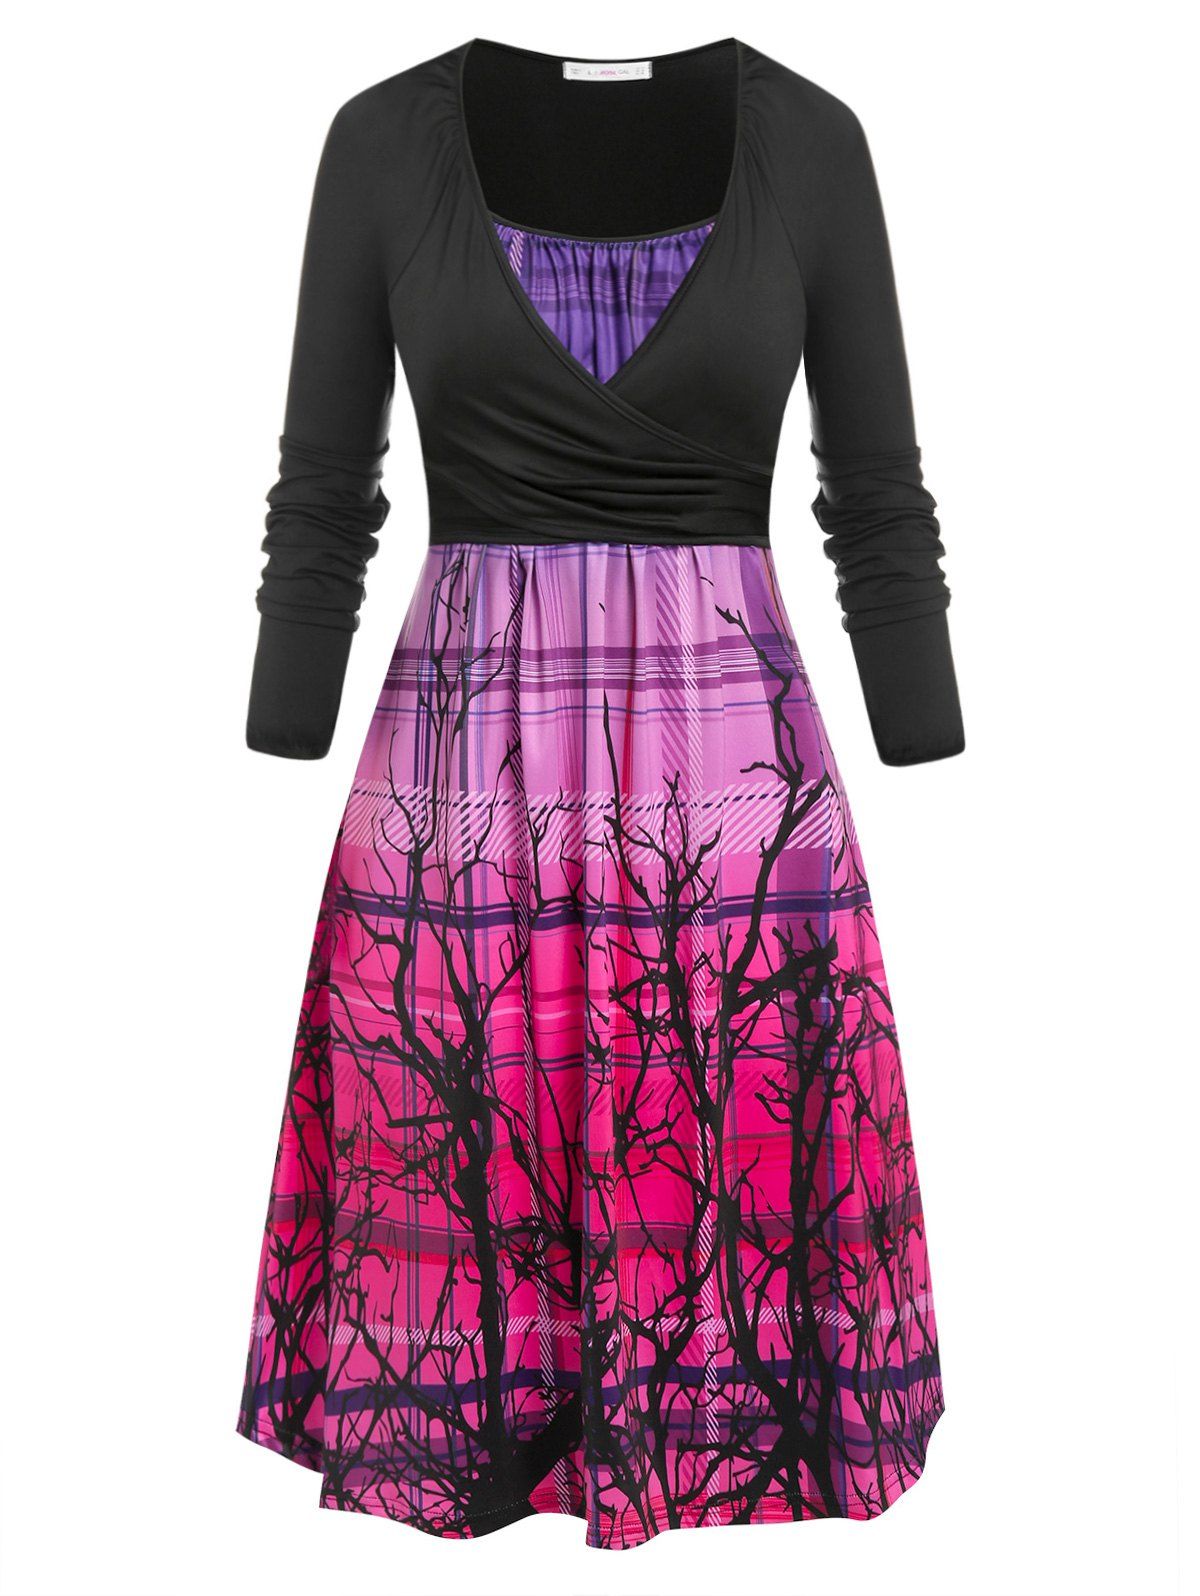 Plus Size Ombre Plaid Branch Print Cami Dress with Wrap T Shirt - multicolor 3X